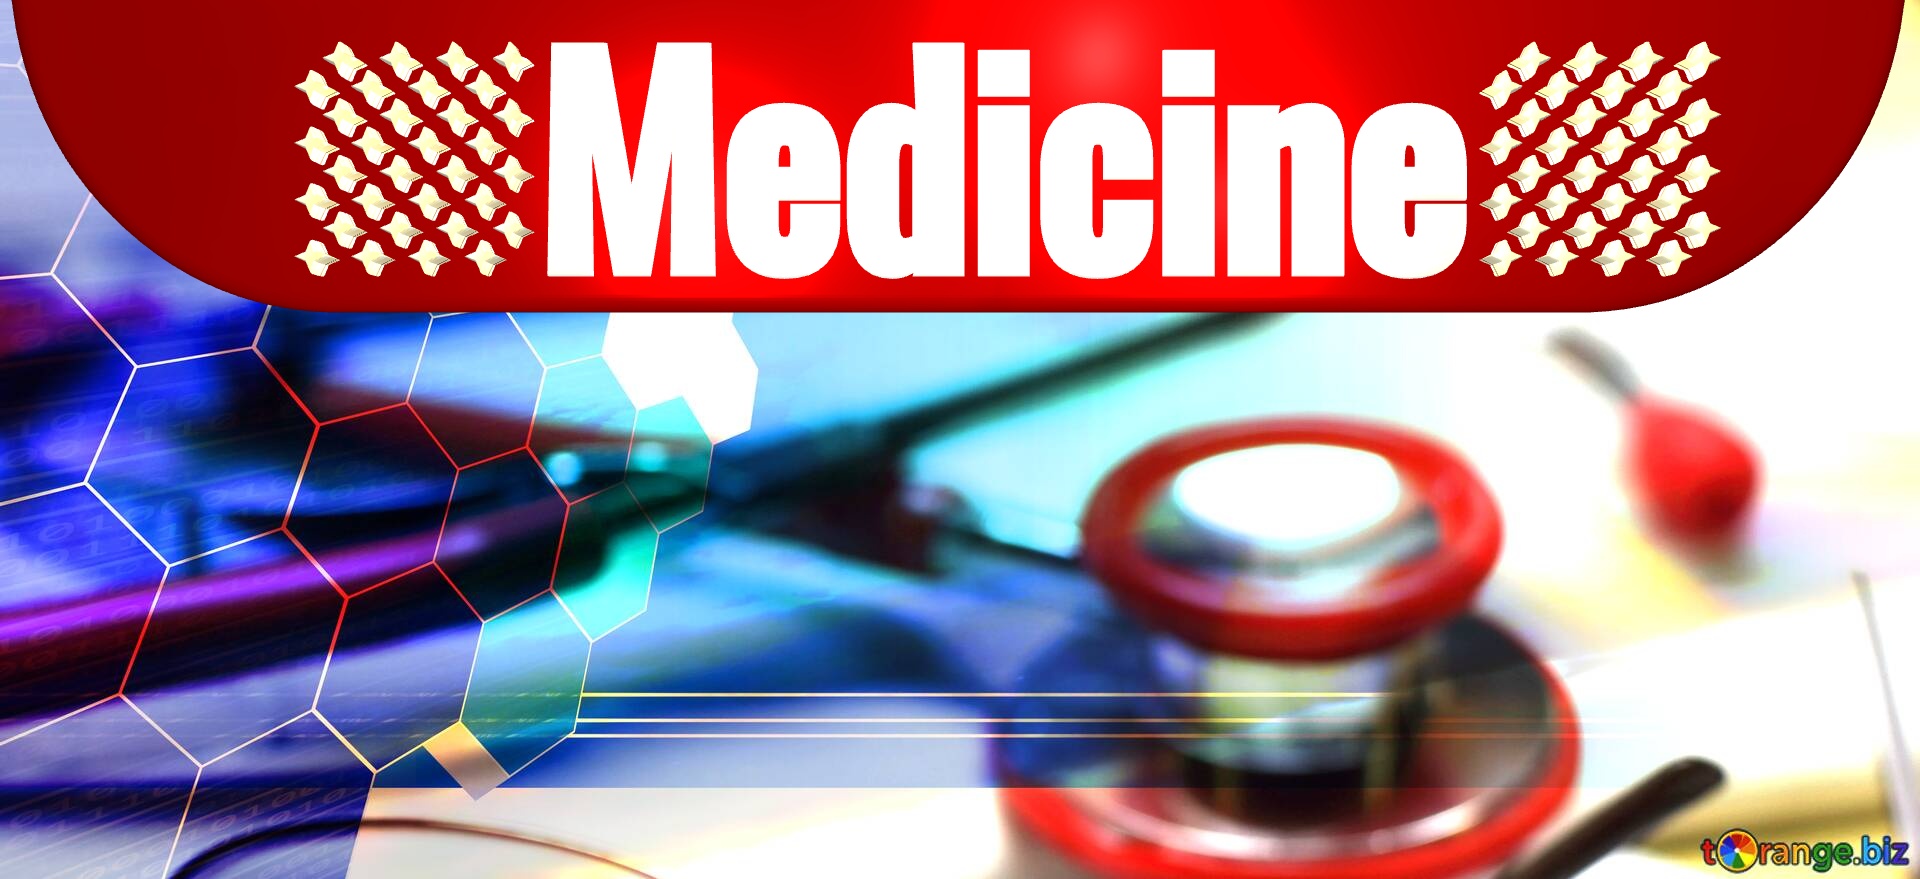 Medicine Doctor online header cover №0